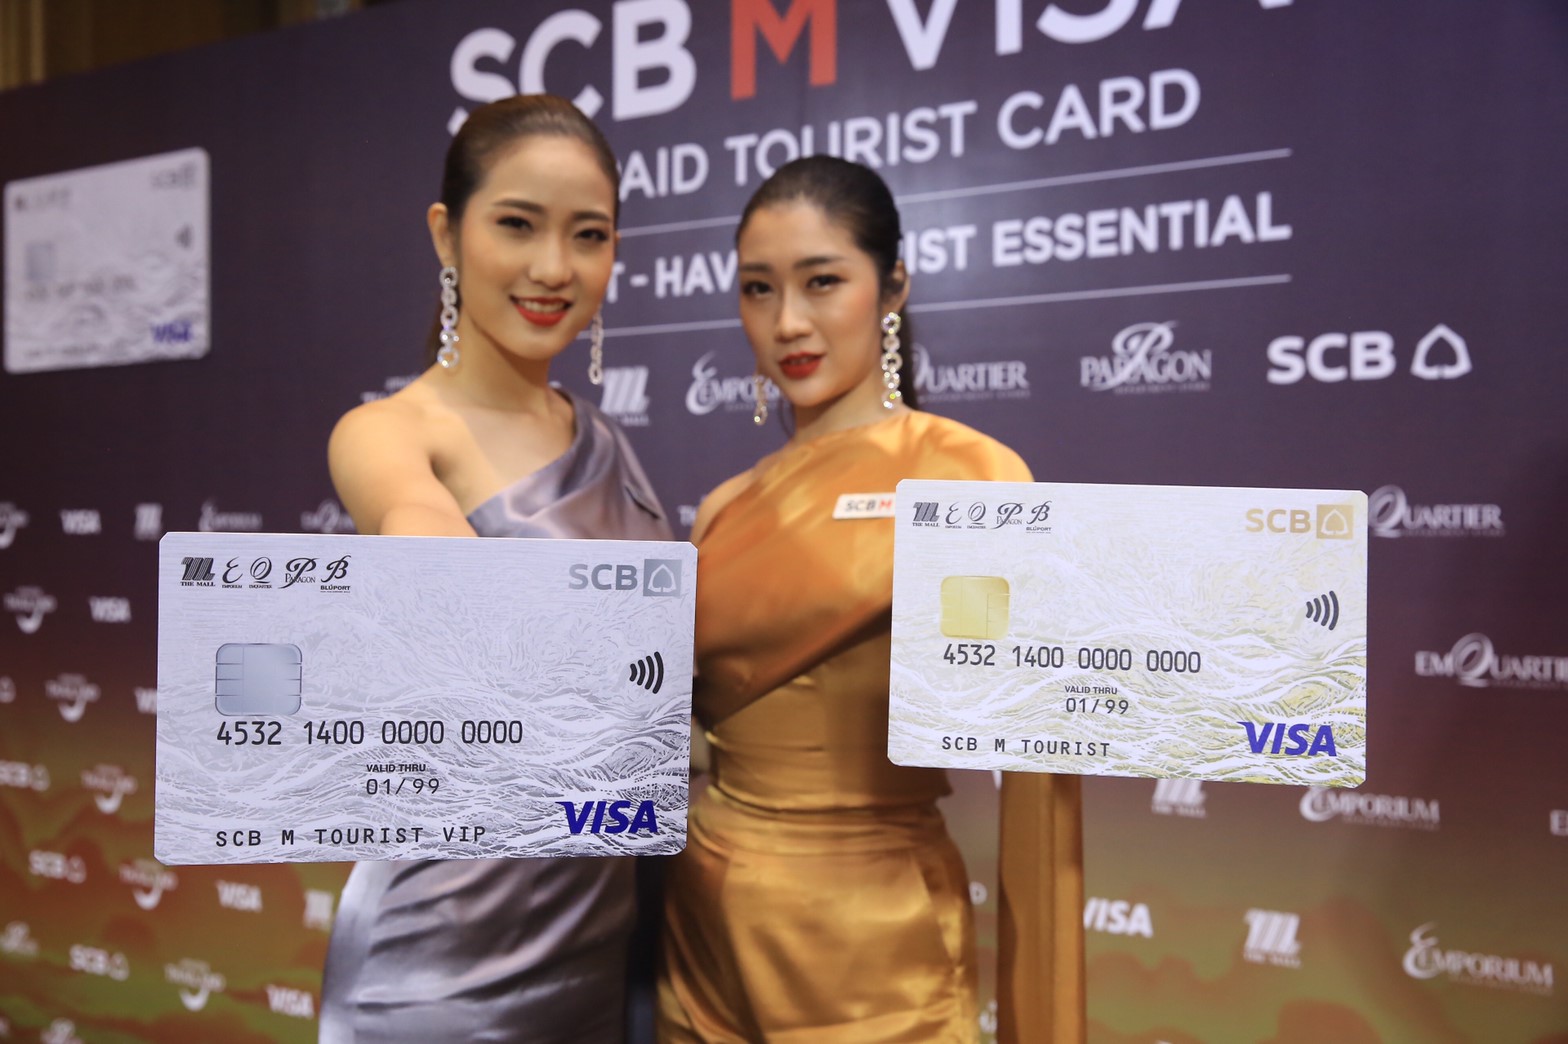 “ธนาคารไทยพาณิชย์” ผนึกกำลัง “เดอะมอลล์ กรุ๊ป” และ “วีซ่า” เปิดตัวบัตรเติมเงิน SCB M VISA PREPAID TOURIST จับกลุ่มนักท่องเที่ยวต่างชาติ